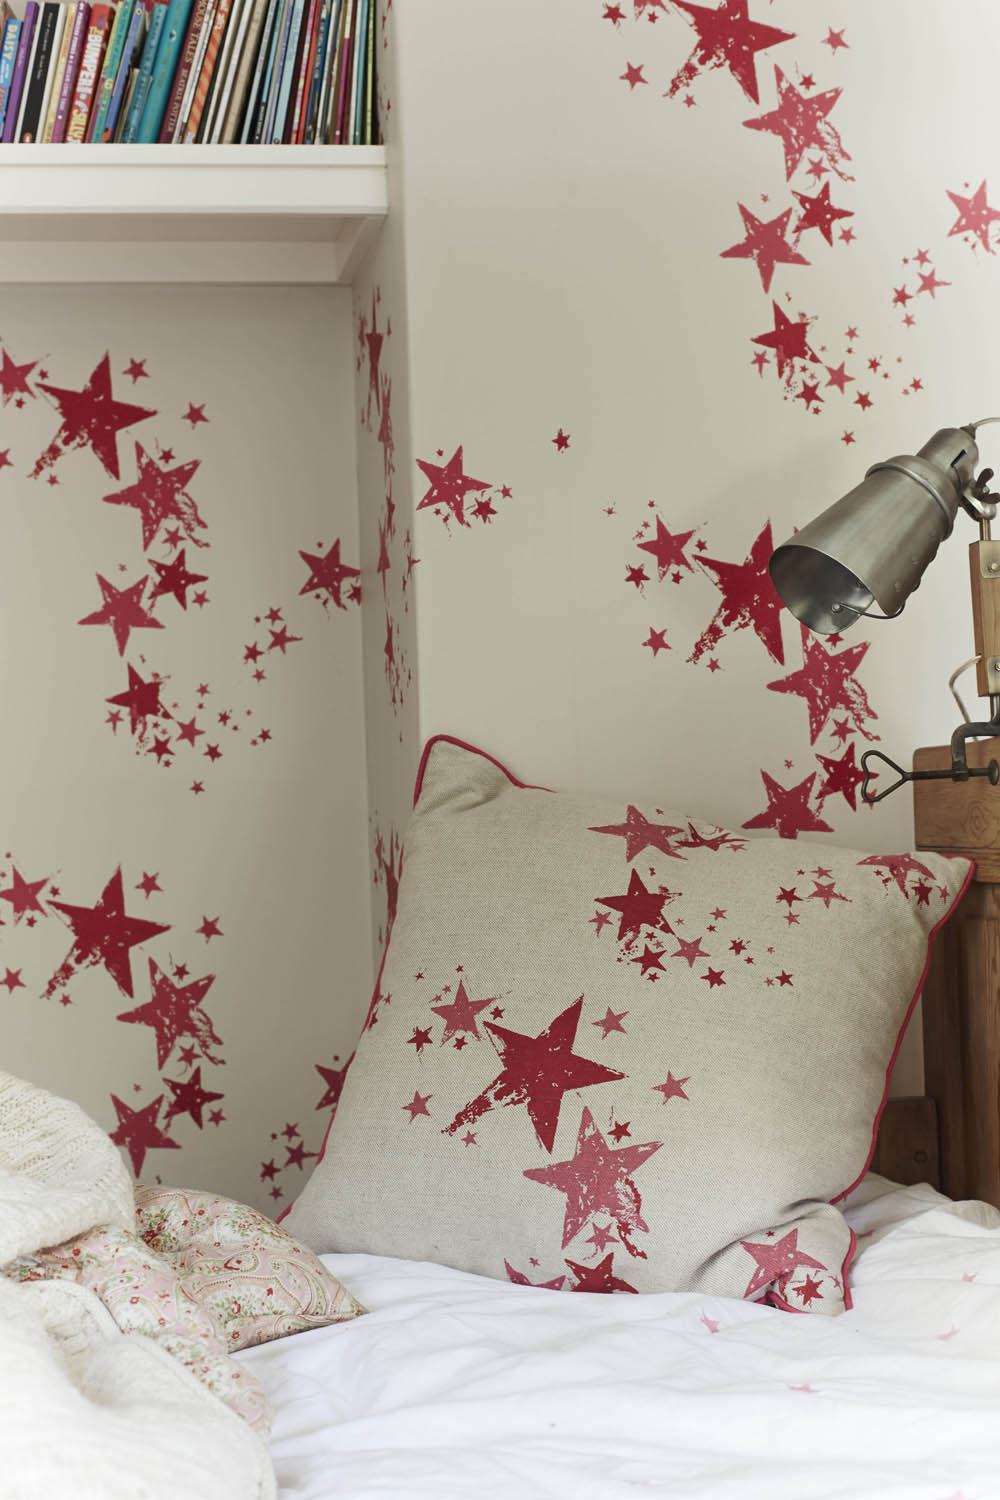 All Star Nursery Room Wallpaper 4 - Red